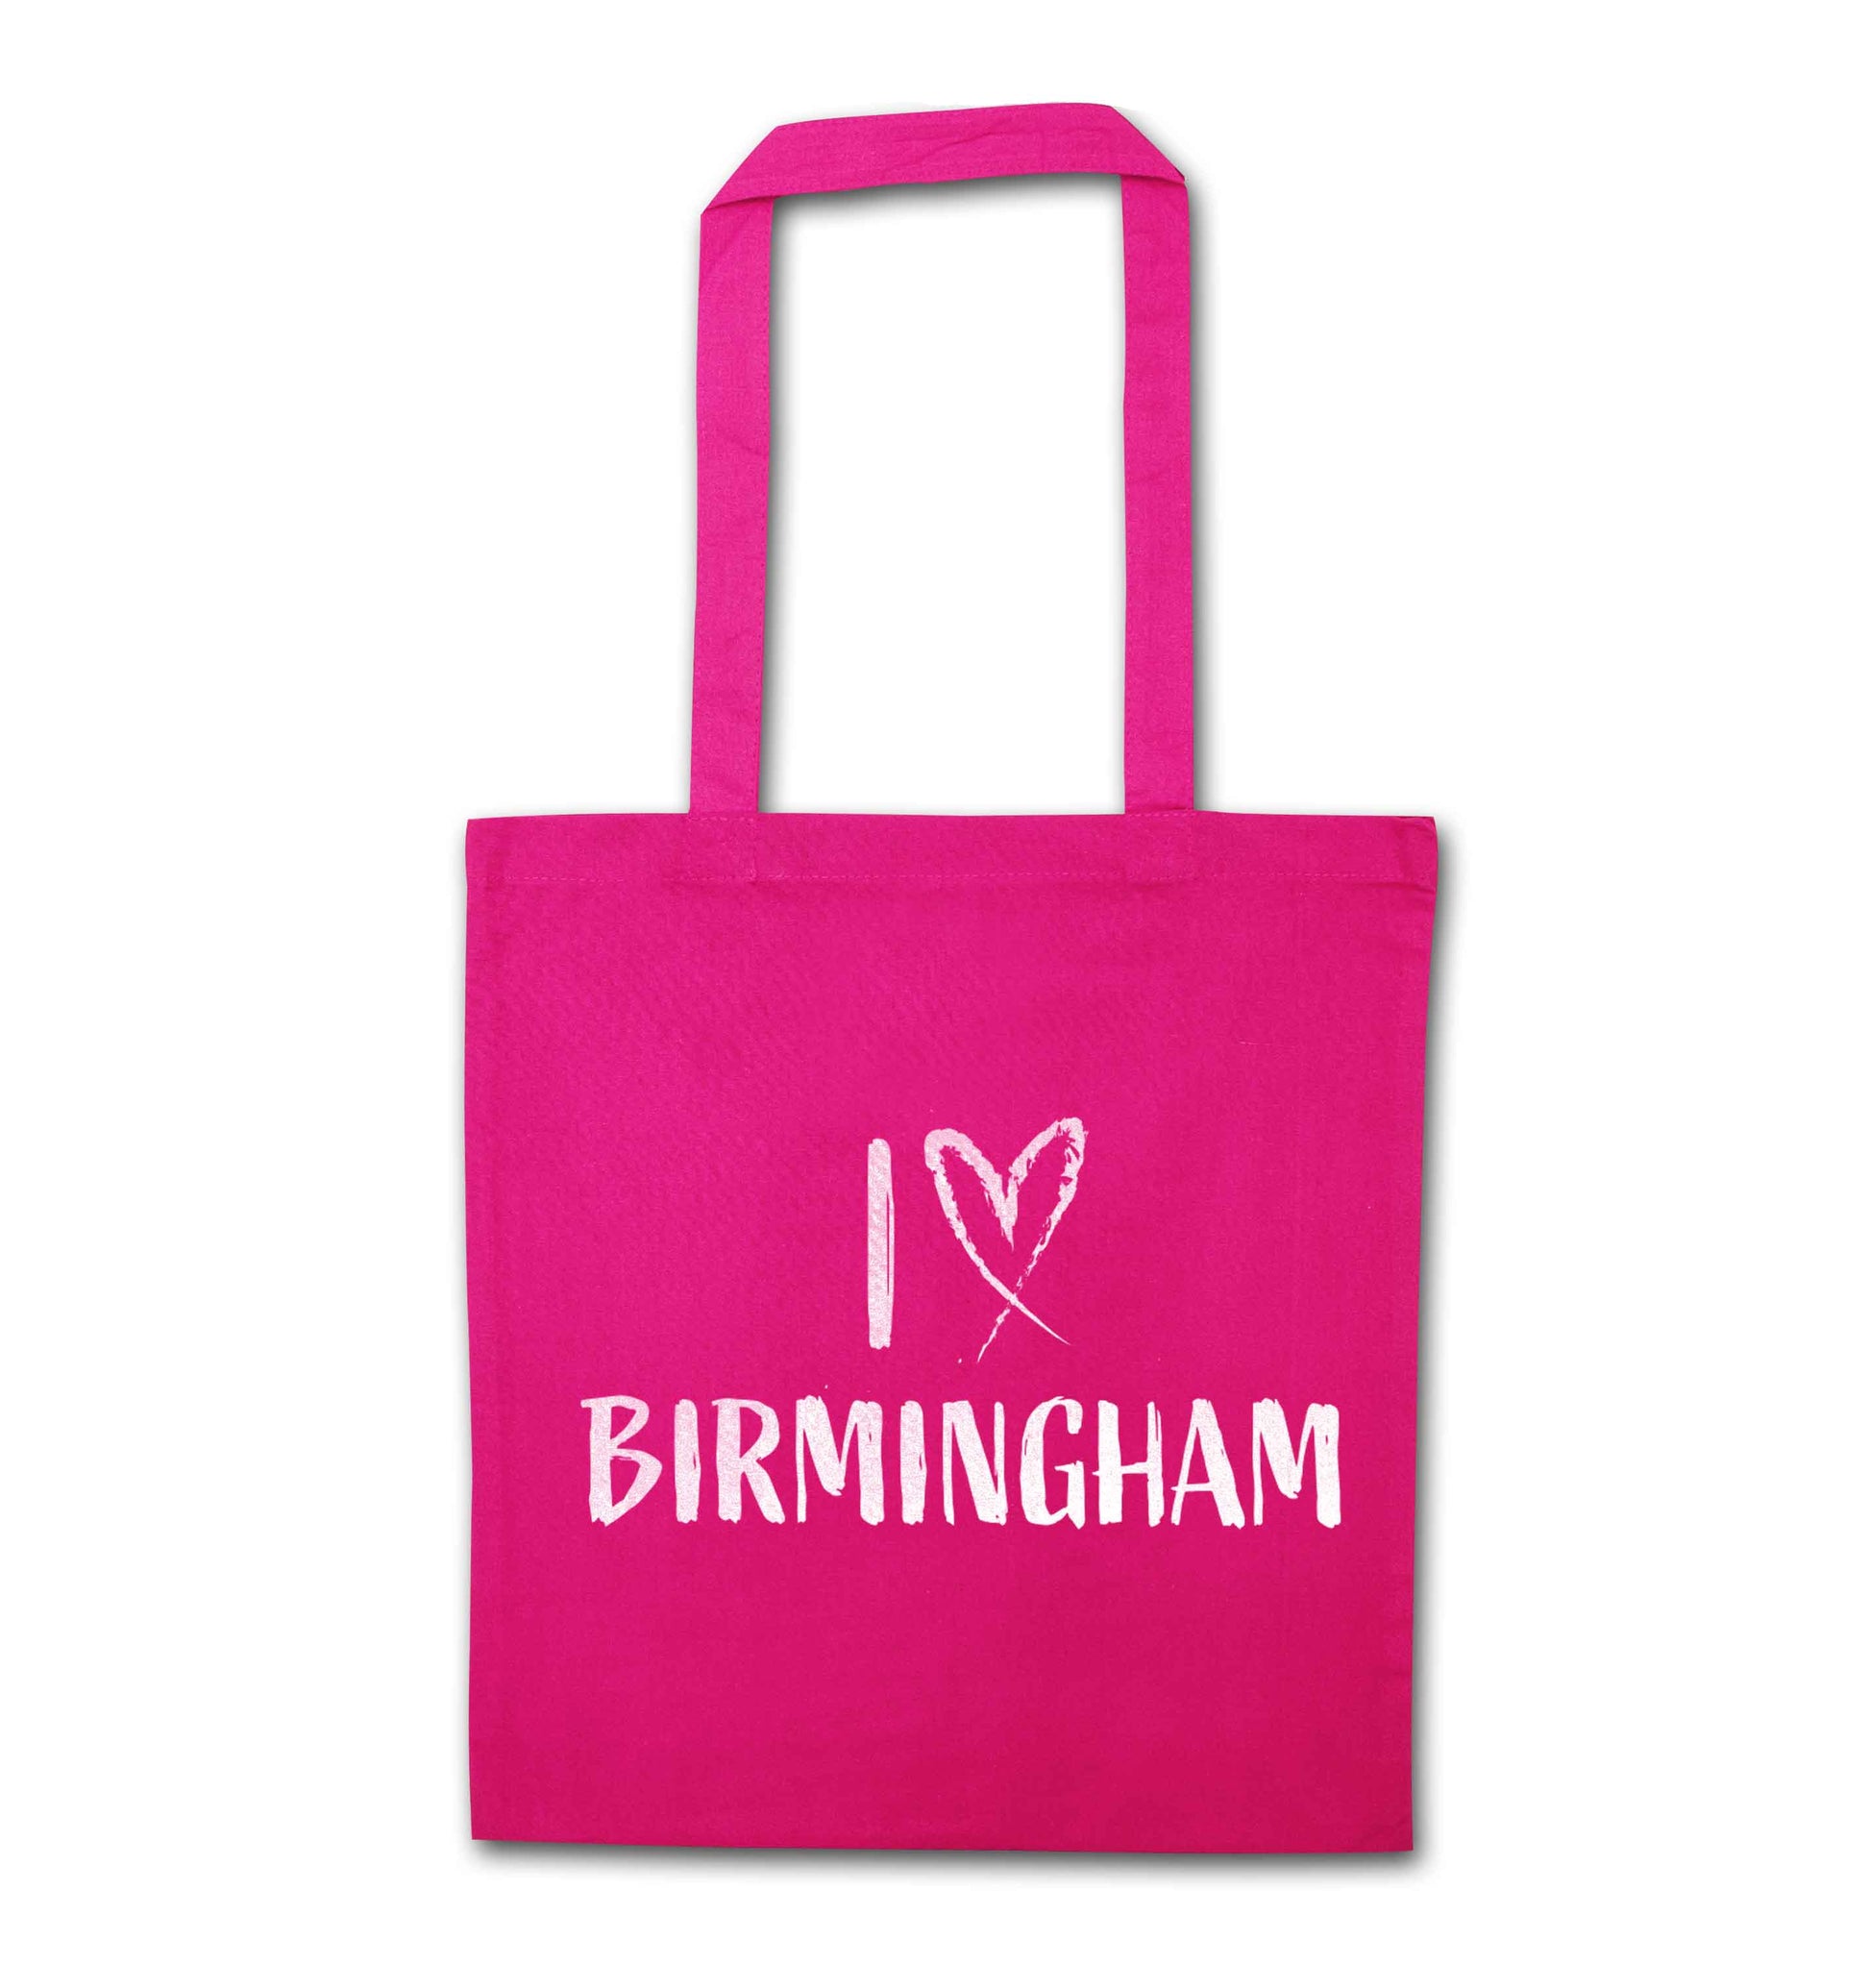 I love Birmingham pink tote bag